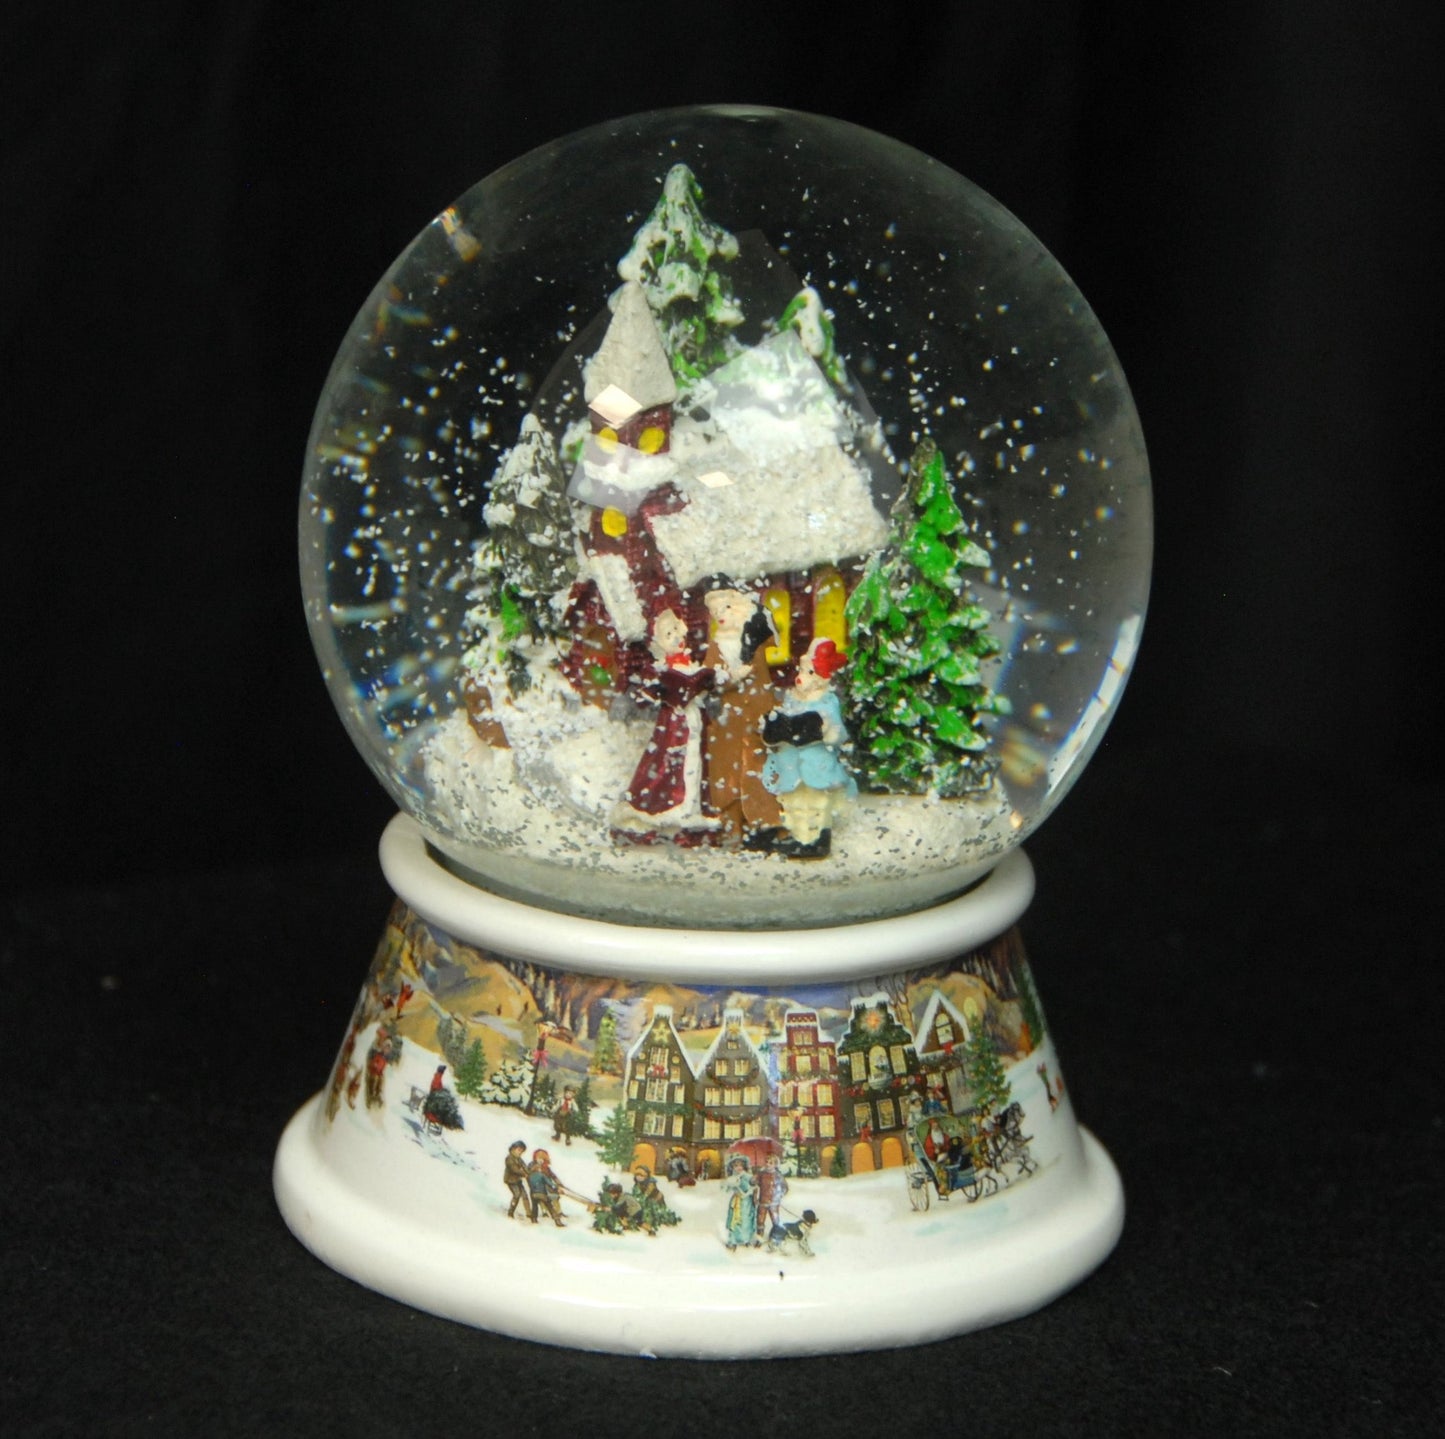 Schneekugel Weihnachtsspaziergang auf Sockel nostalgische Häuserlandschaft mit Spieluhr 10 cm Durchmesser - Schneekugelhaus